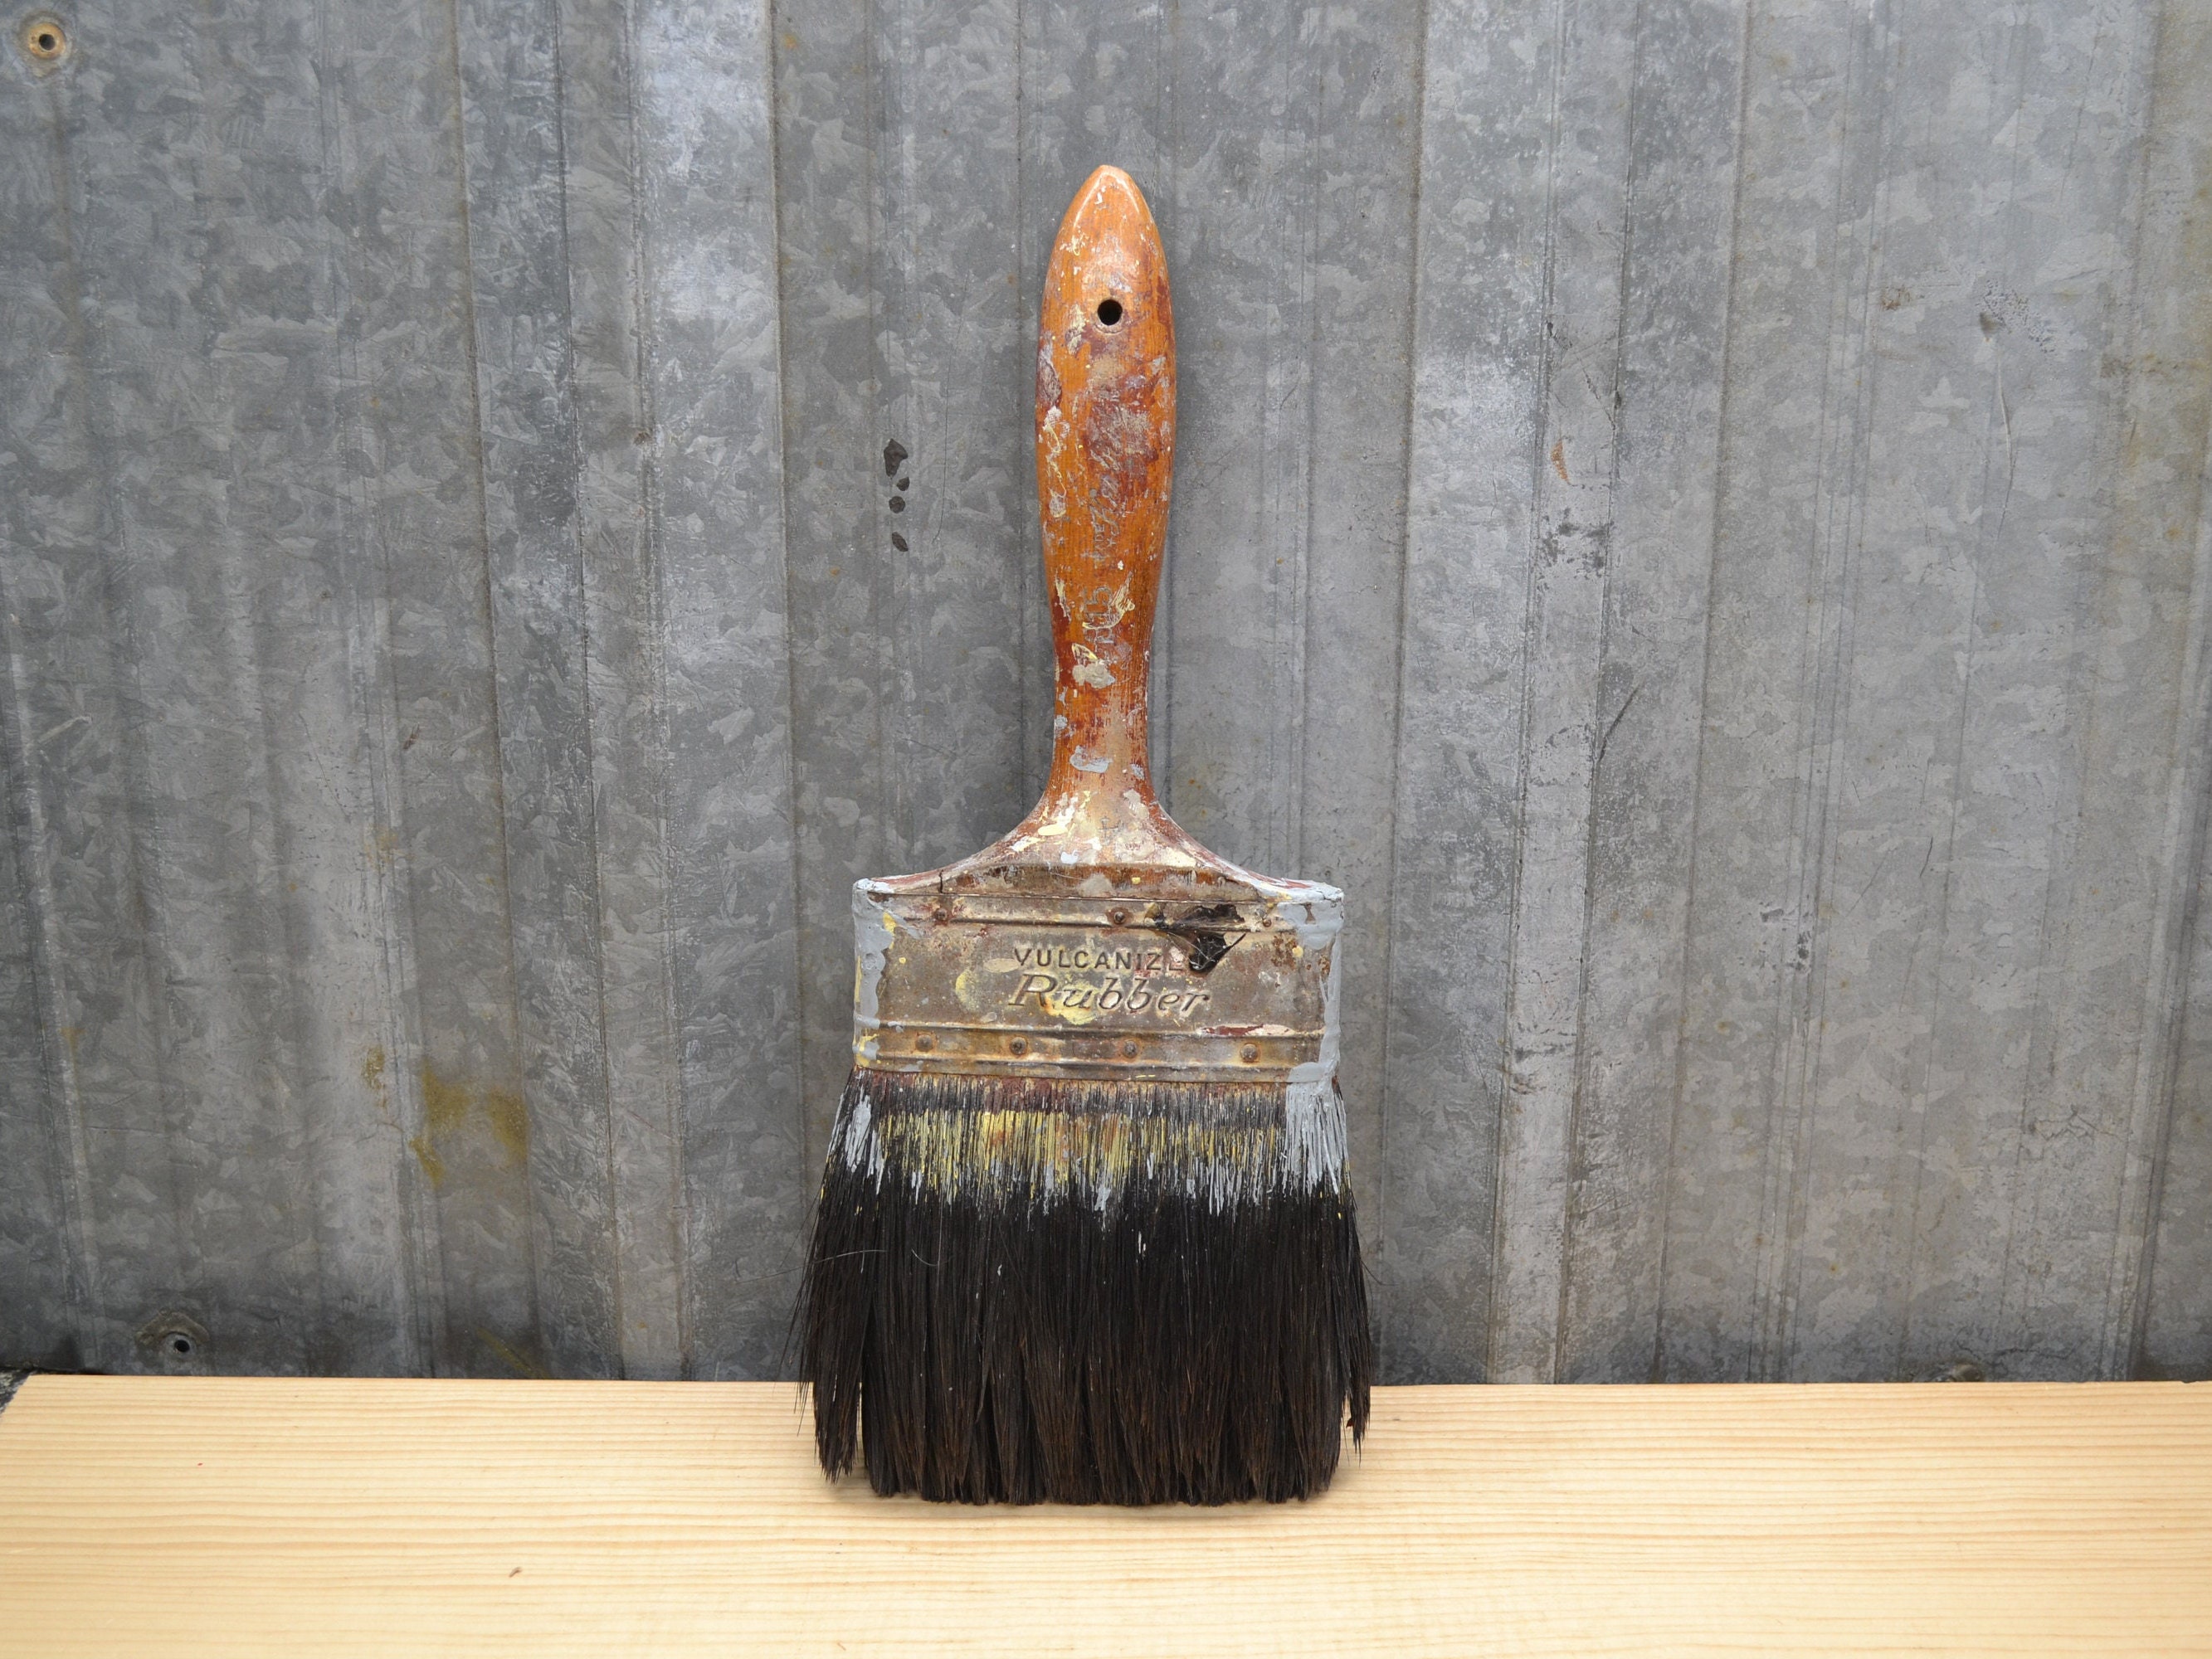 Vintage Large Paint Brush, Primitive 5” Wide, W/Wood Handle 2” Deep